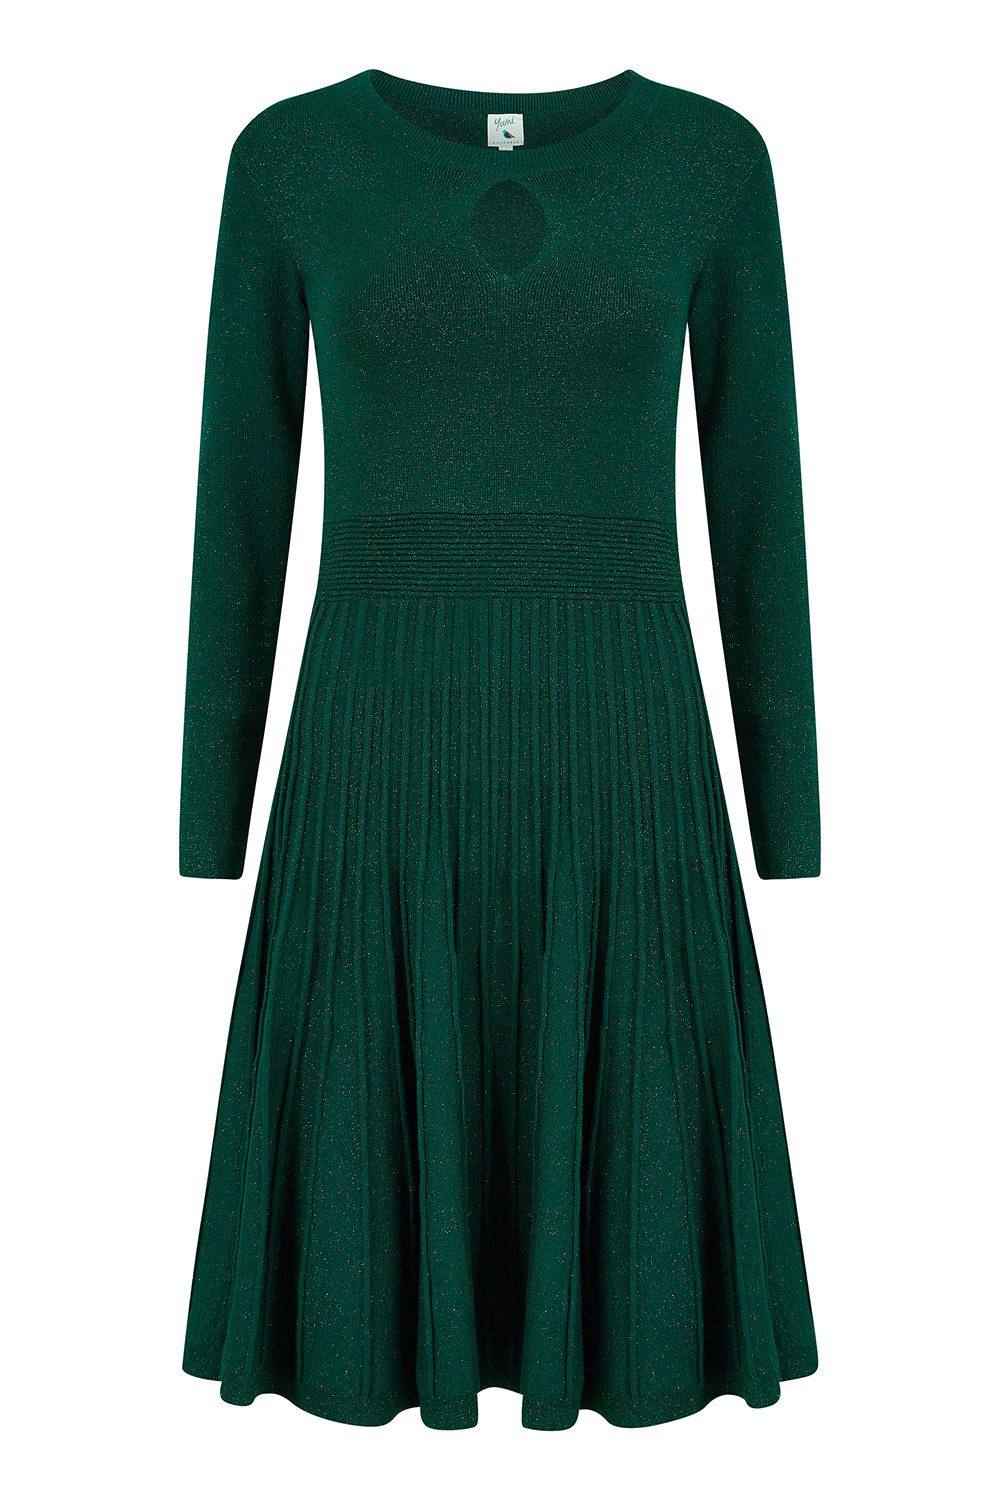 Green Lurex Knitted Skater Dress